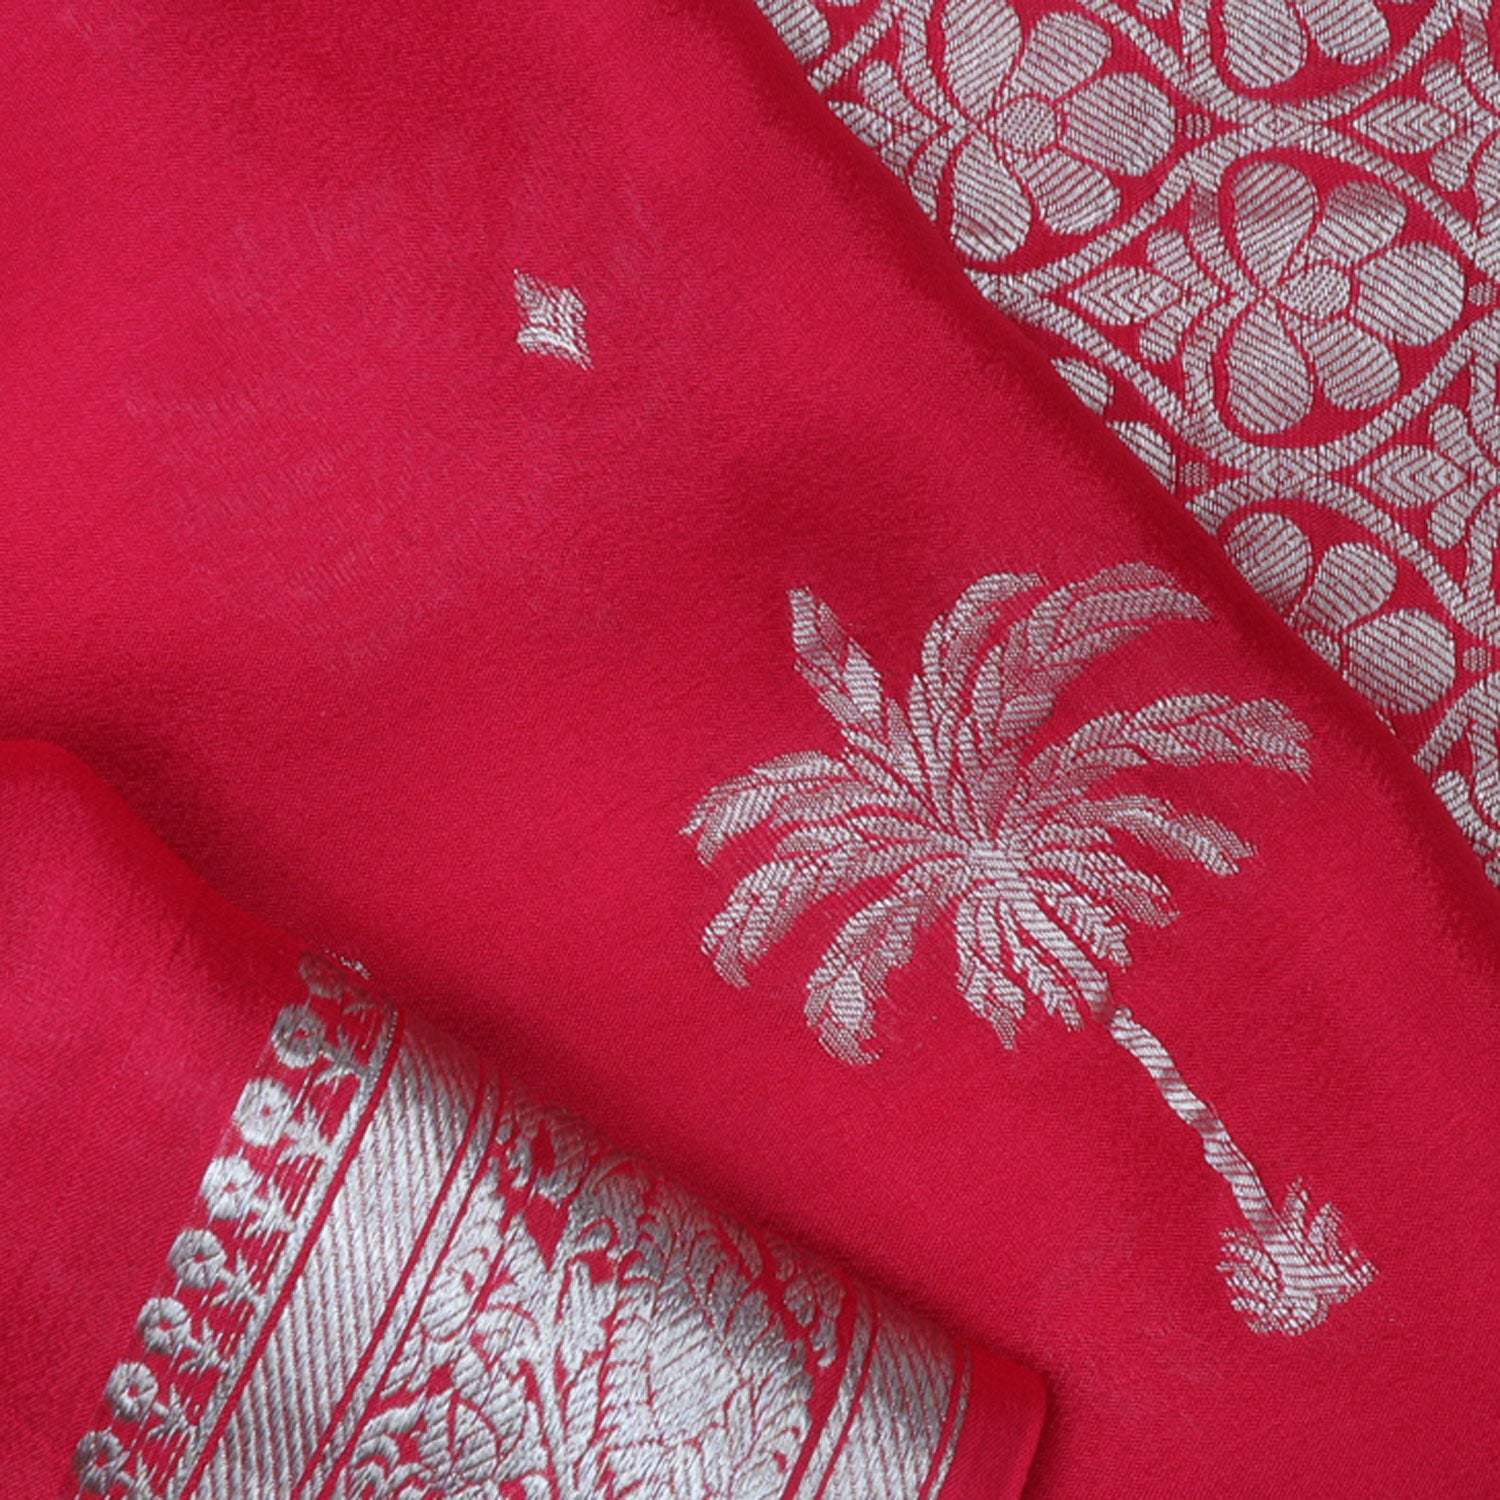 Sindoor Red Banarasi Silk Saree With Tree Motifs - Singhania's